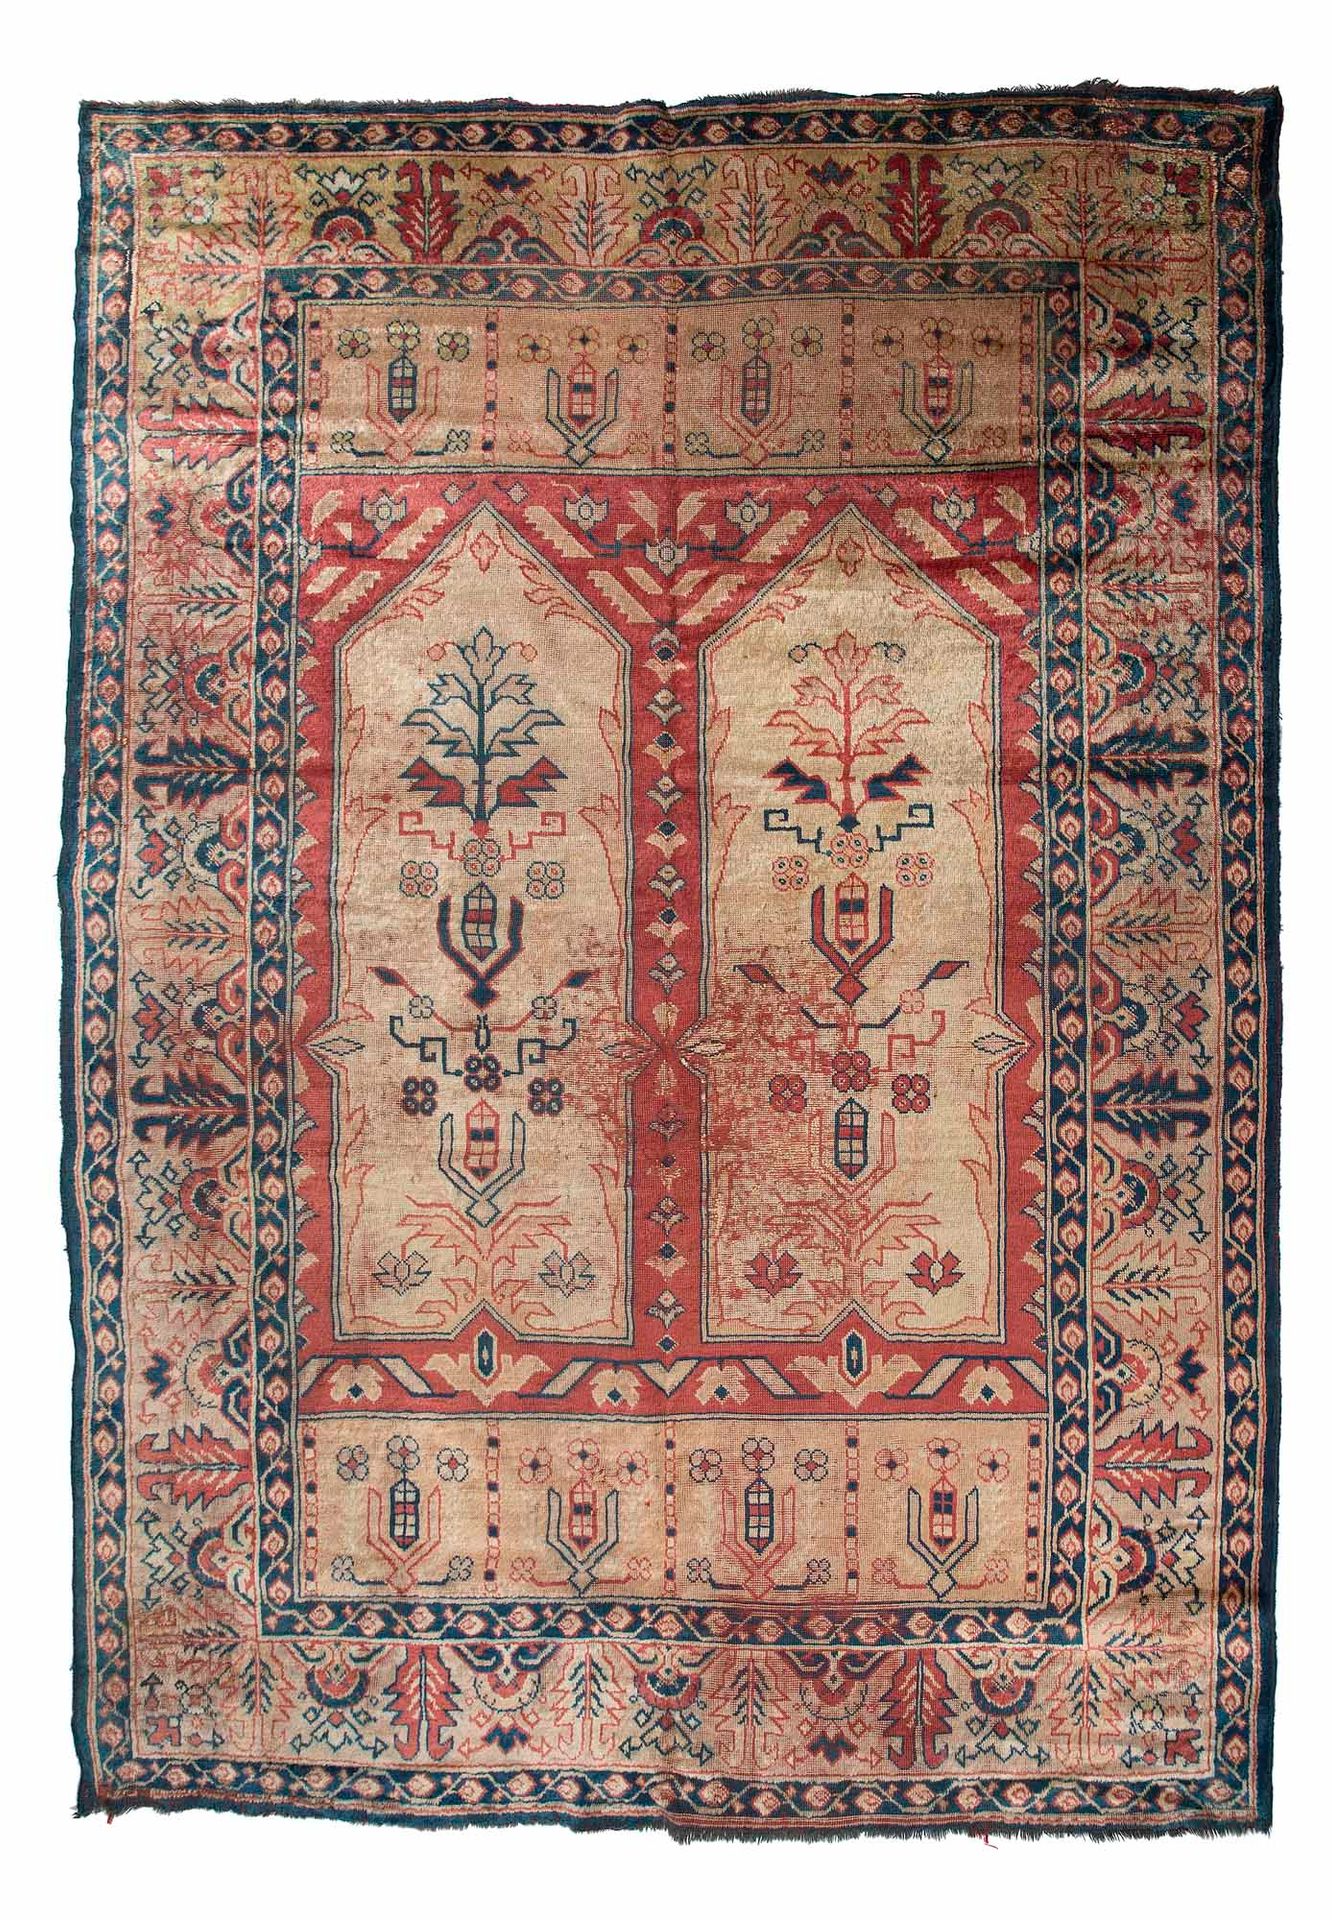 Null Raro tappeto TIF-TIK (Asia Minore), fine XIX secolo

Dimensioni: 335 x 225 &hellip;